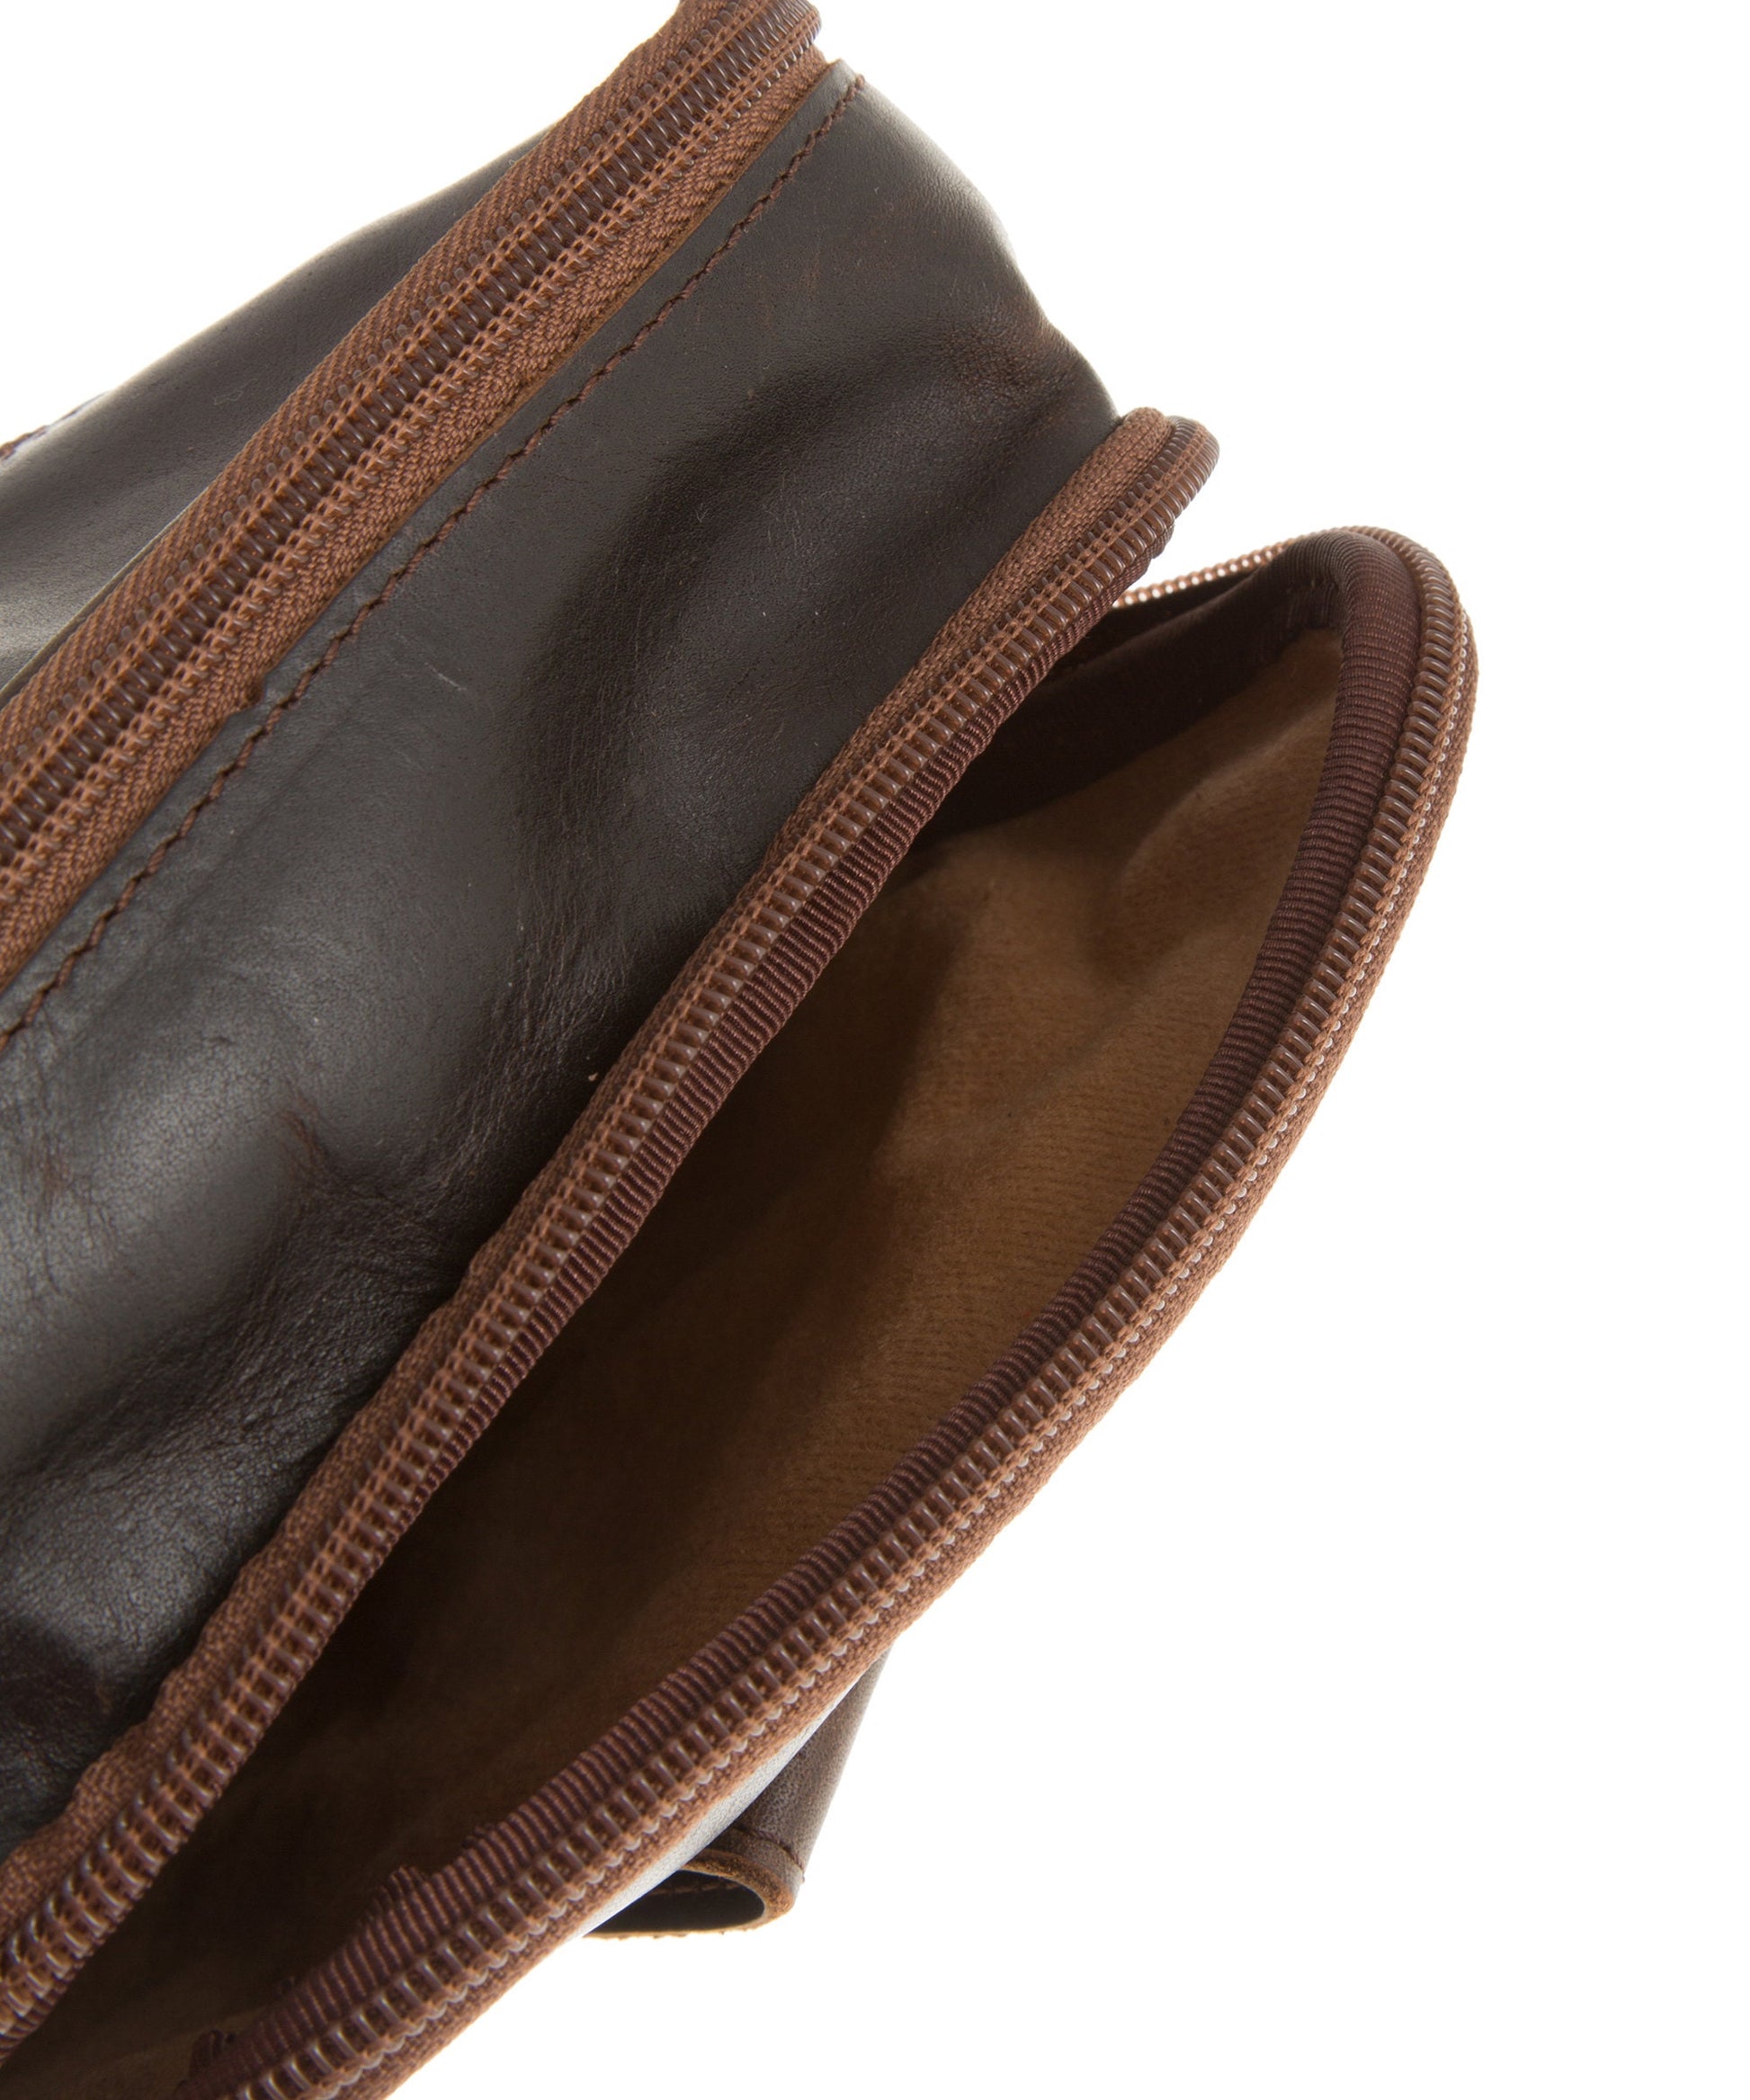 Full grain leather crossbody bag for men, Leather bag men, Leather shoulder bag, Men leather accessories